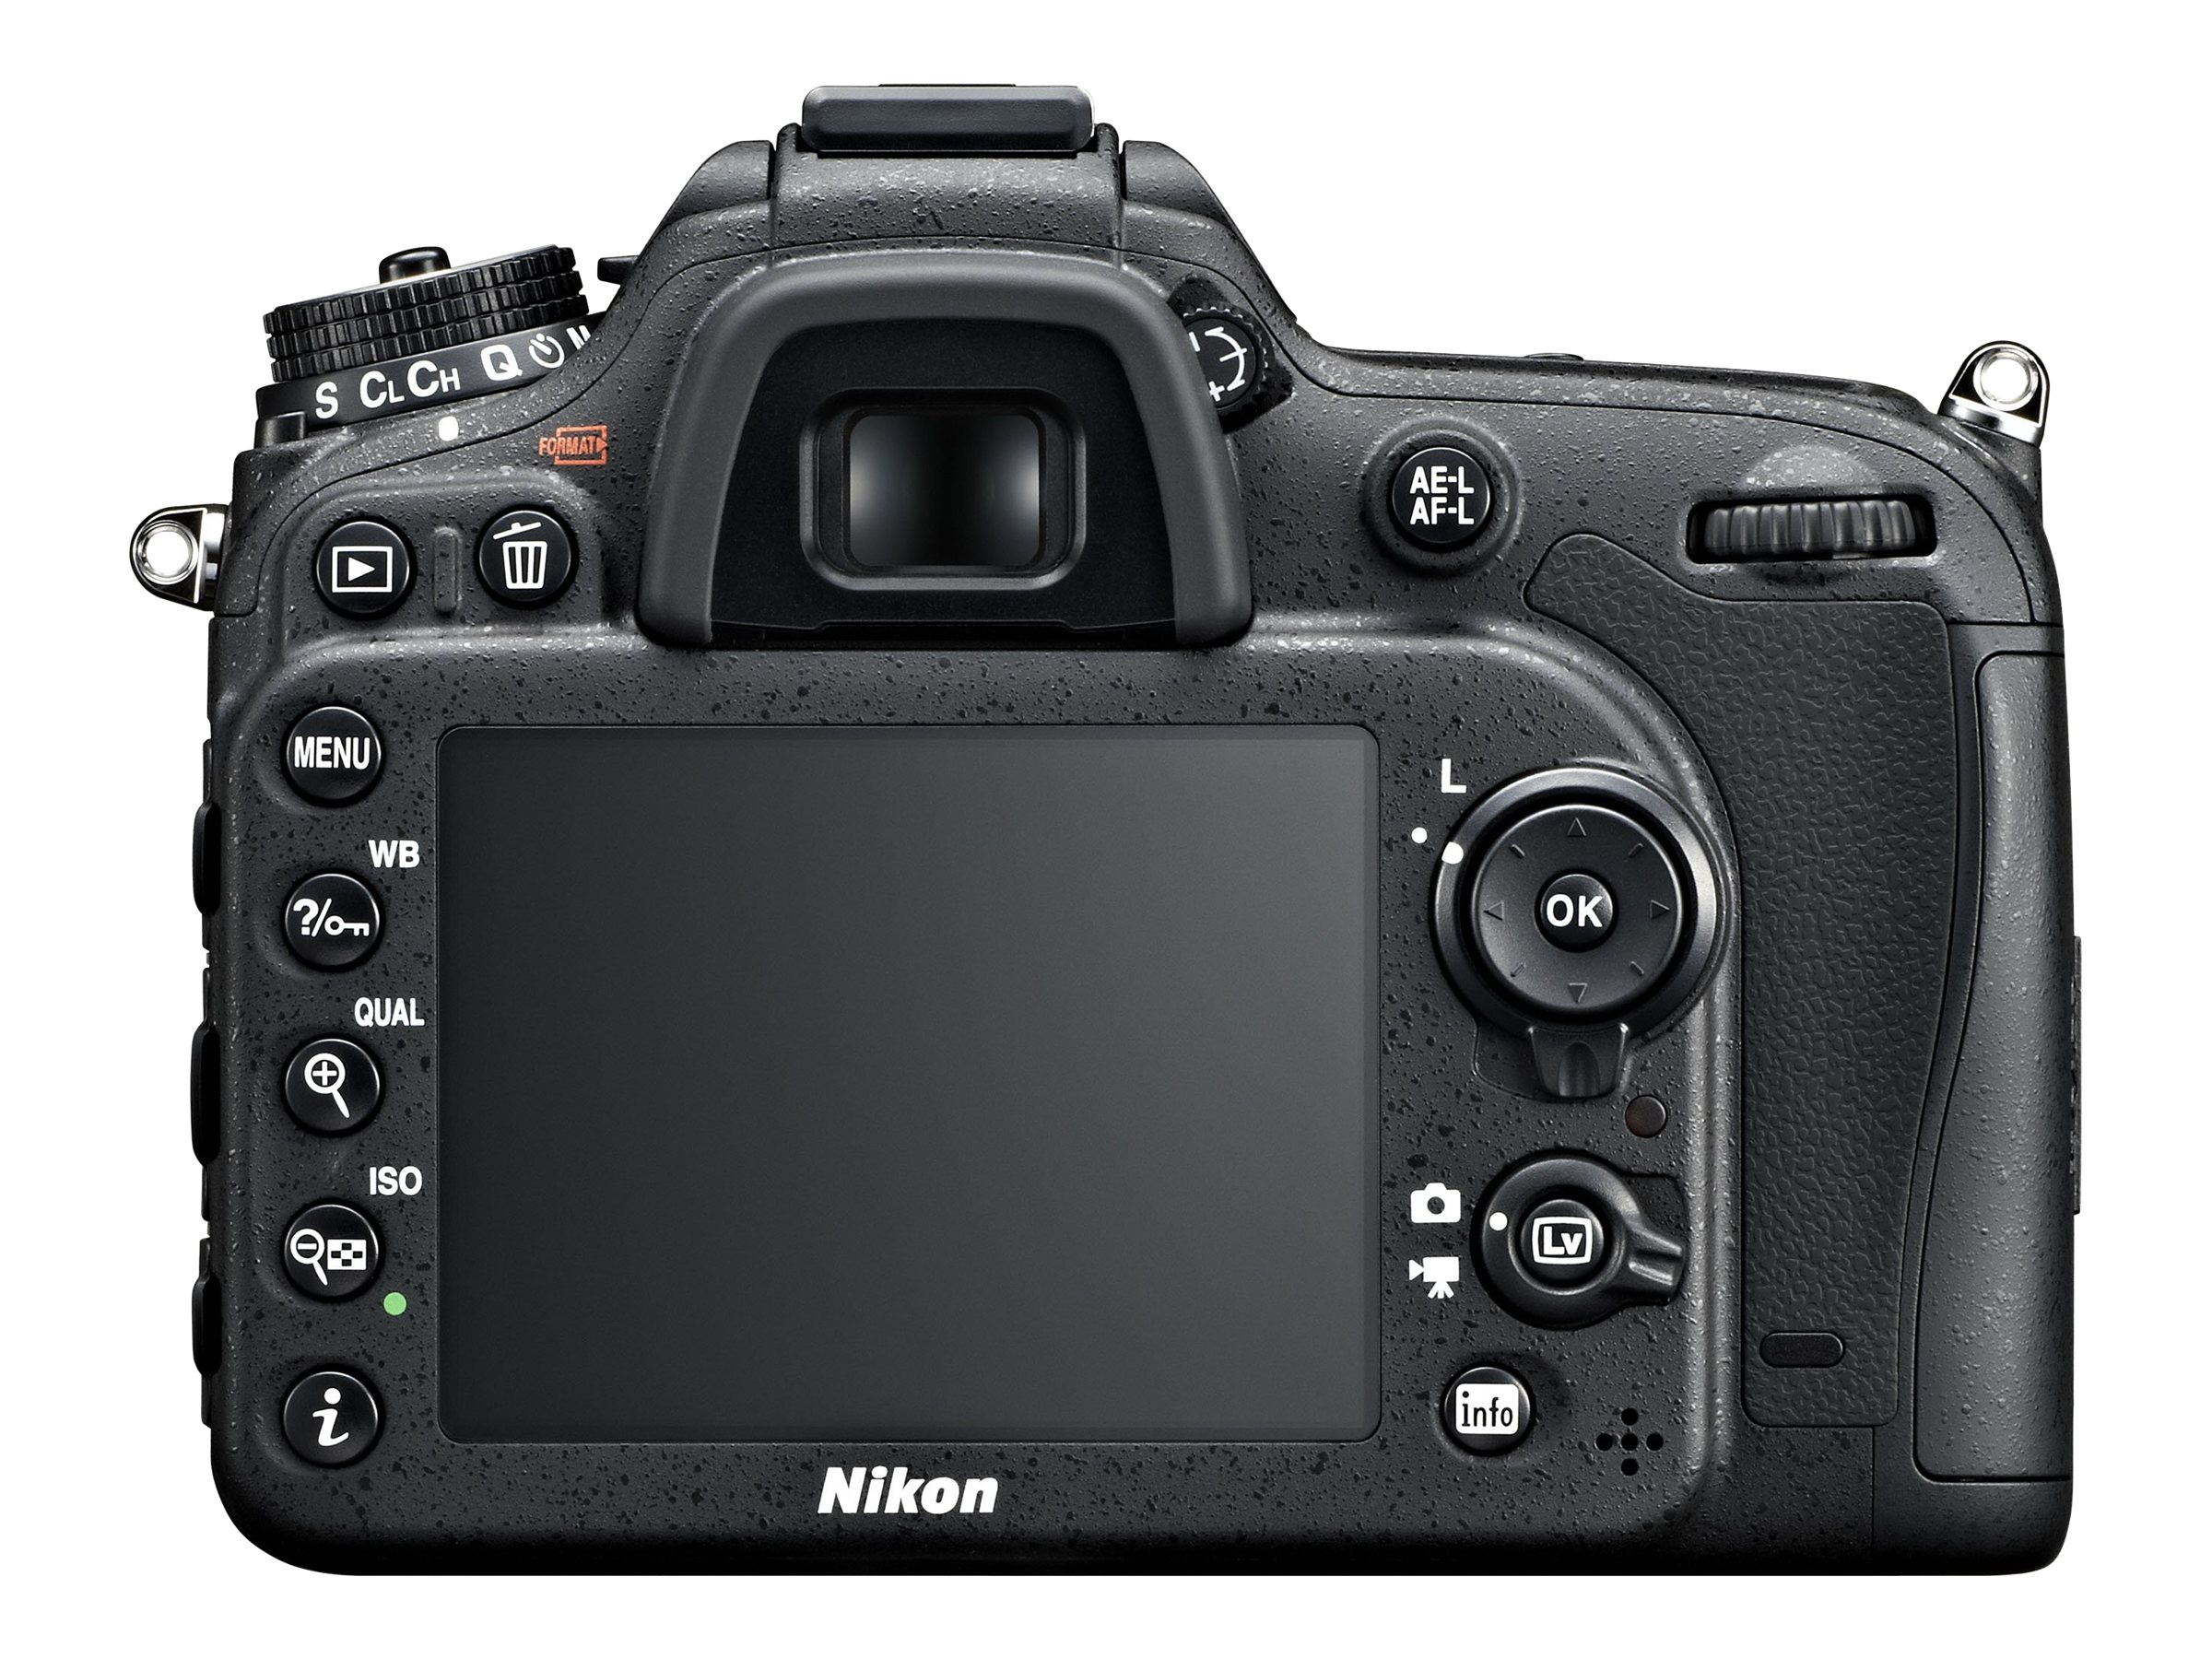 Nikon D7100 - Digital camera - SLR - 24.1 MP - APS-C - 7.8x optical zoom AF-S DX 18-140mm and AF-S 55-300mm VR lenses - black - image 5 of 5